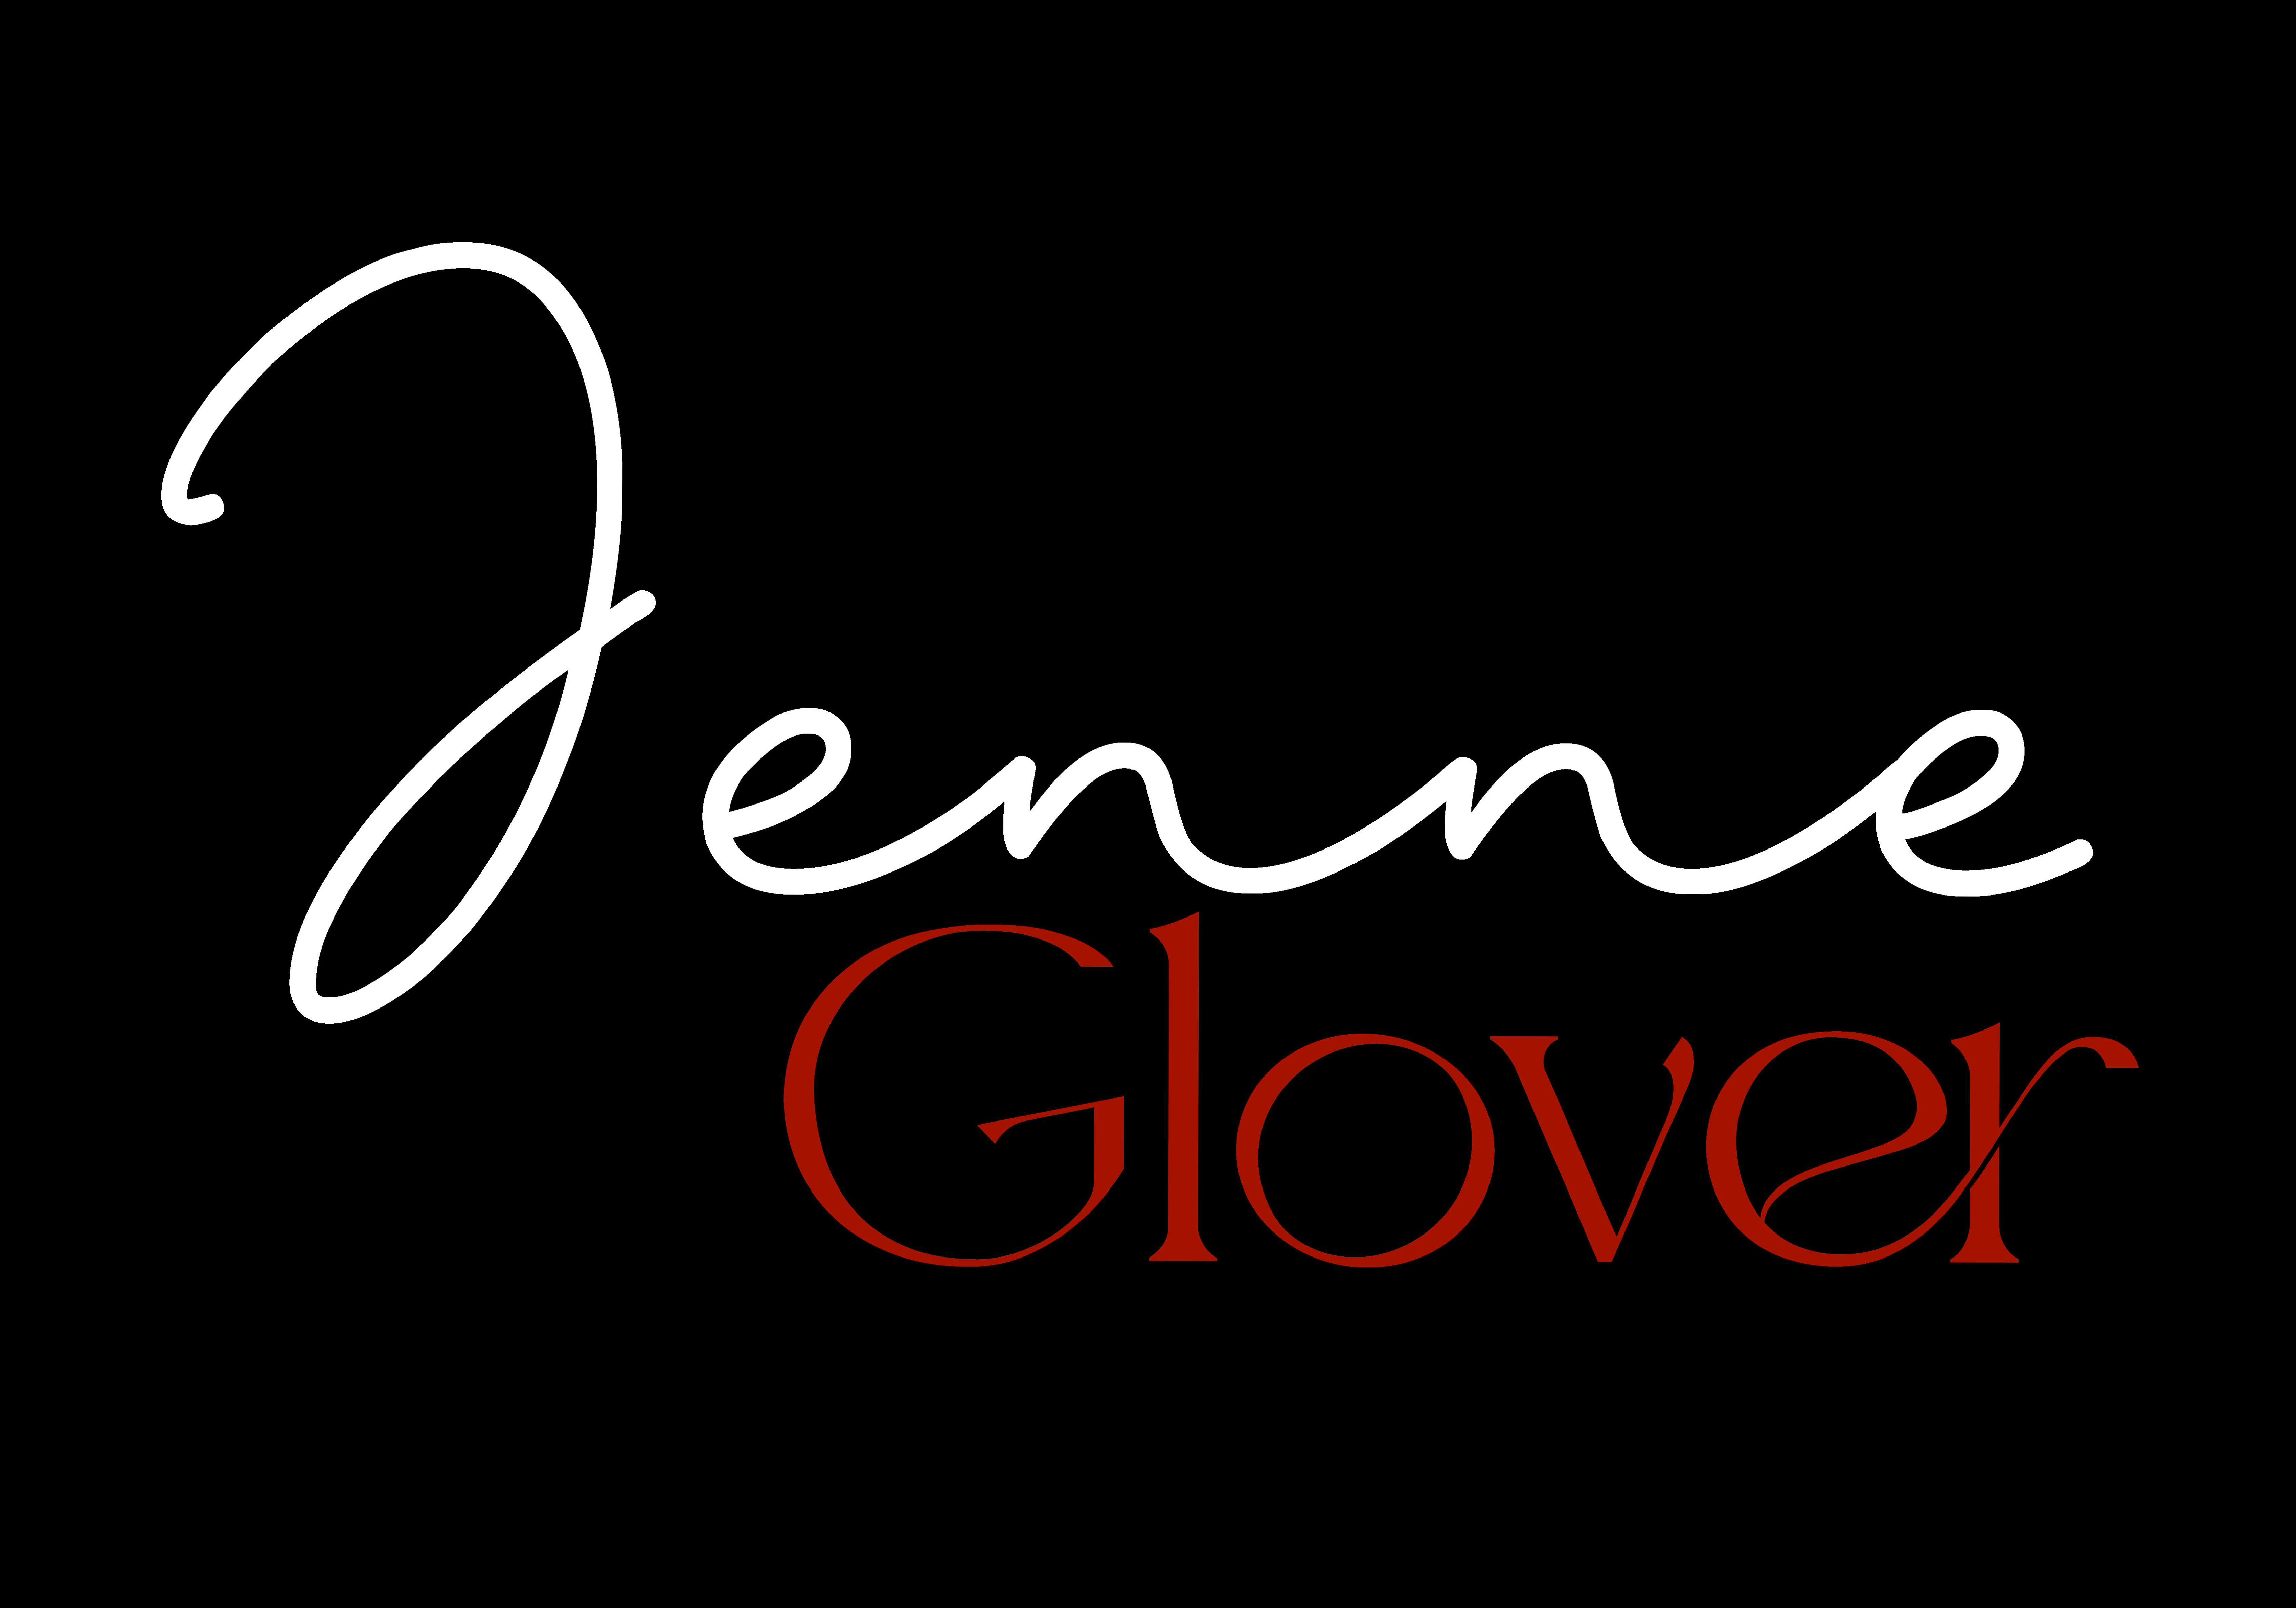 Jenne Glover